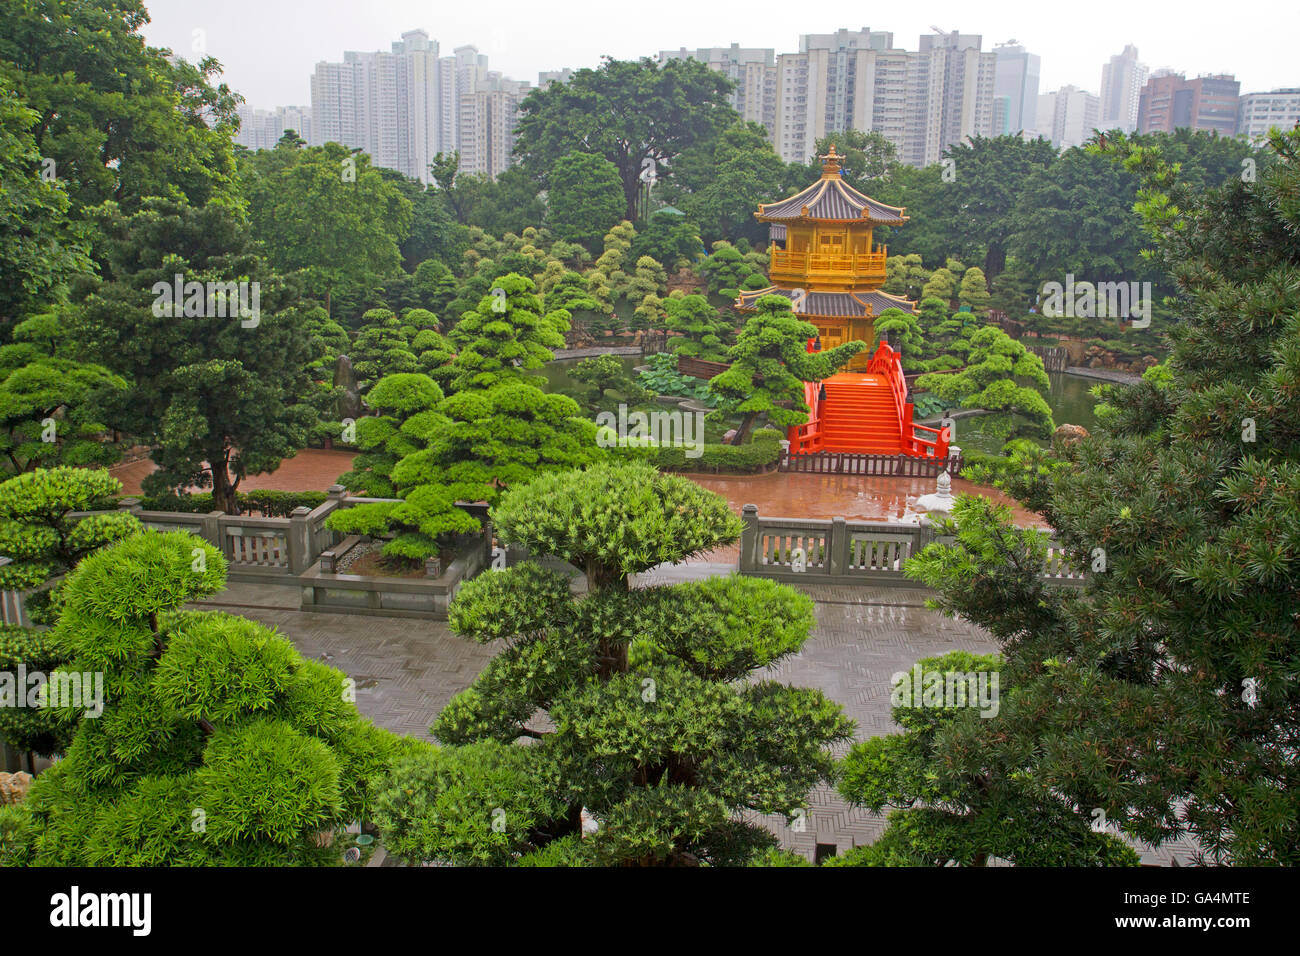 Nan Lian Gardens in Hong Kong Stock Photo